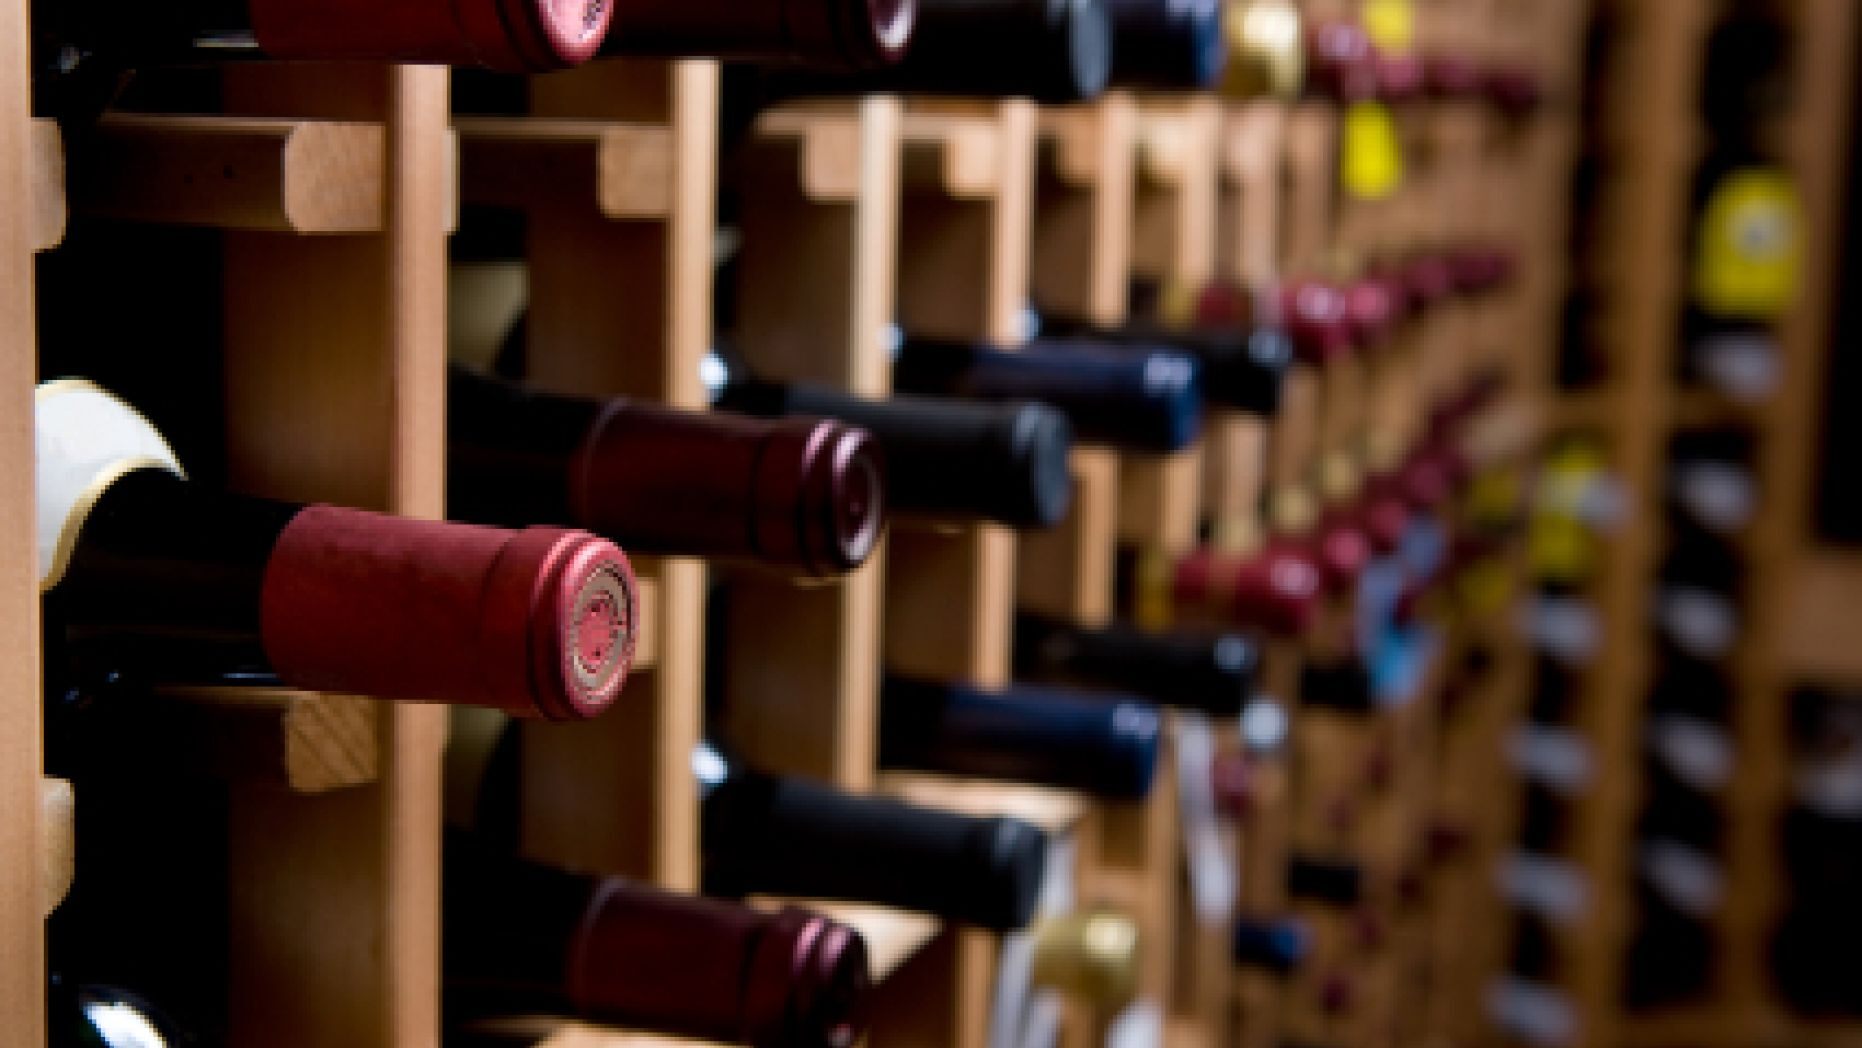 为您的珍贵葡萄酒提供不同的葡萄酒储存解决方案